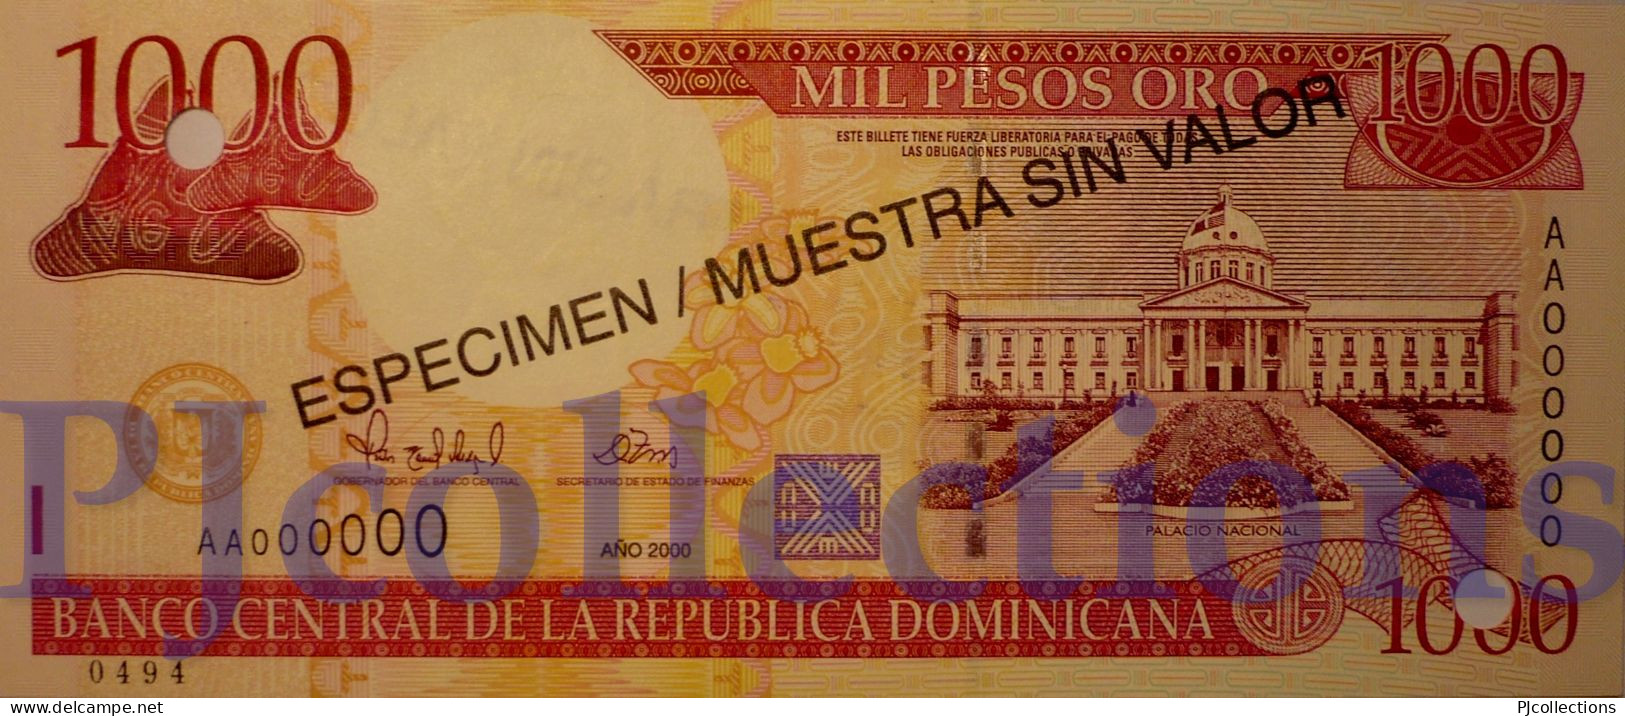 DOMINICAN REPUBLIC 1000 PESOS ORO 2000 PICK 163s SPECIMEN UNC NUMBER "0494" - Dominicaine